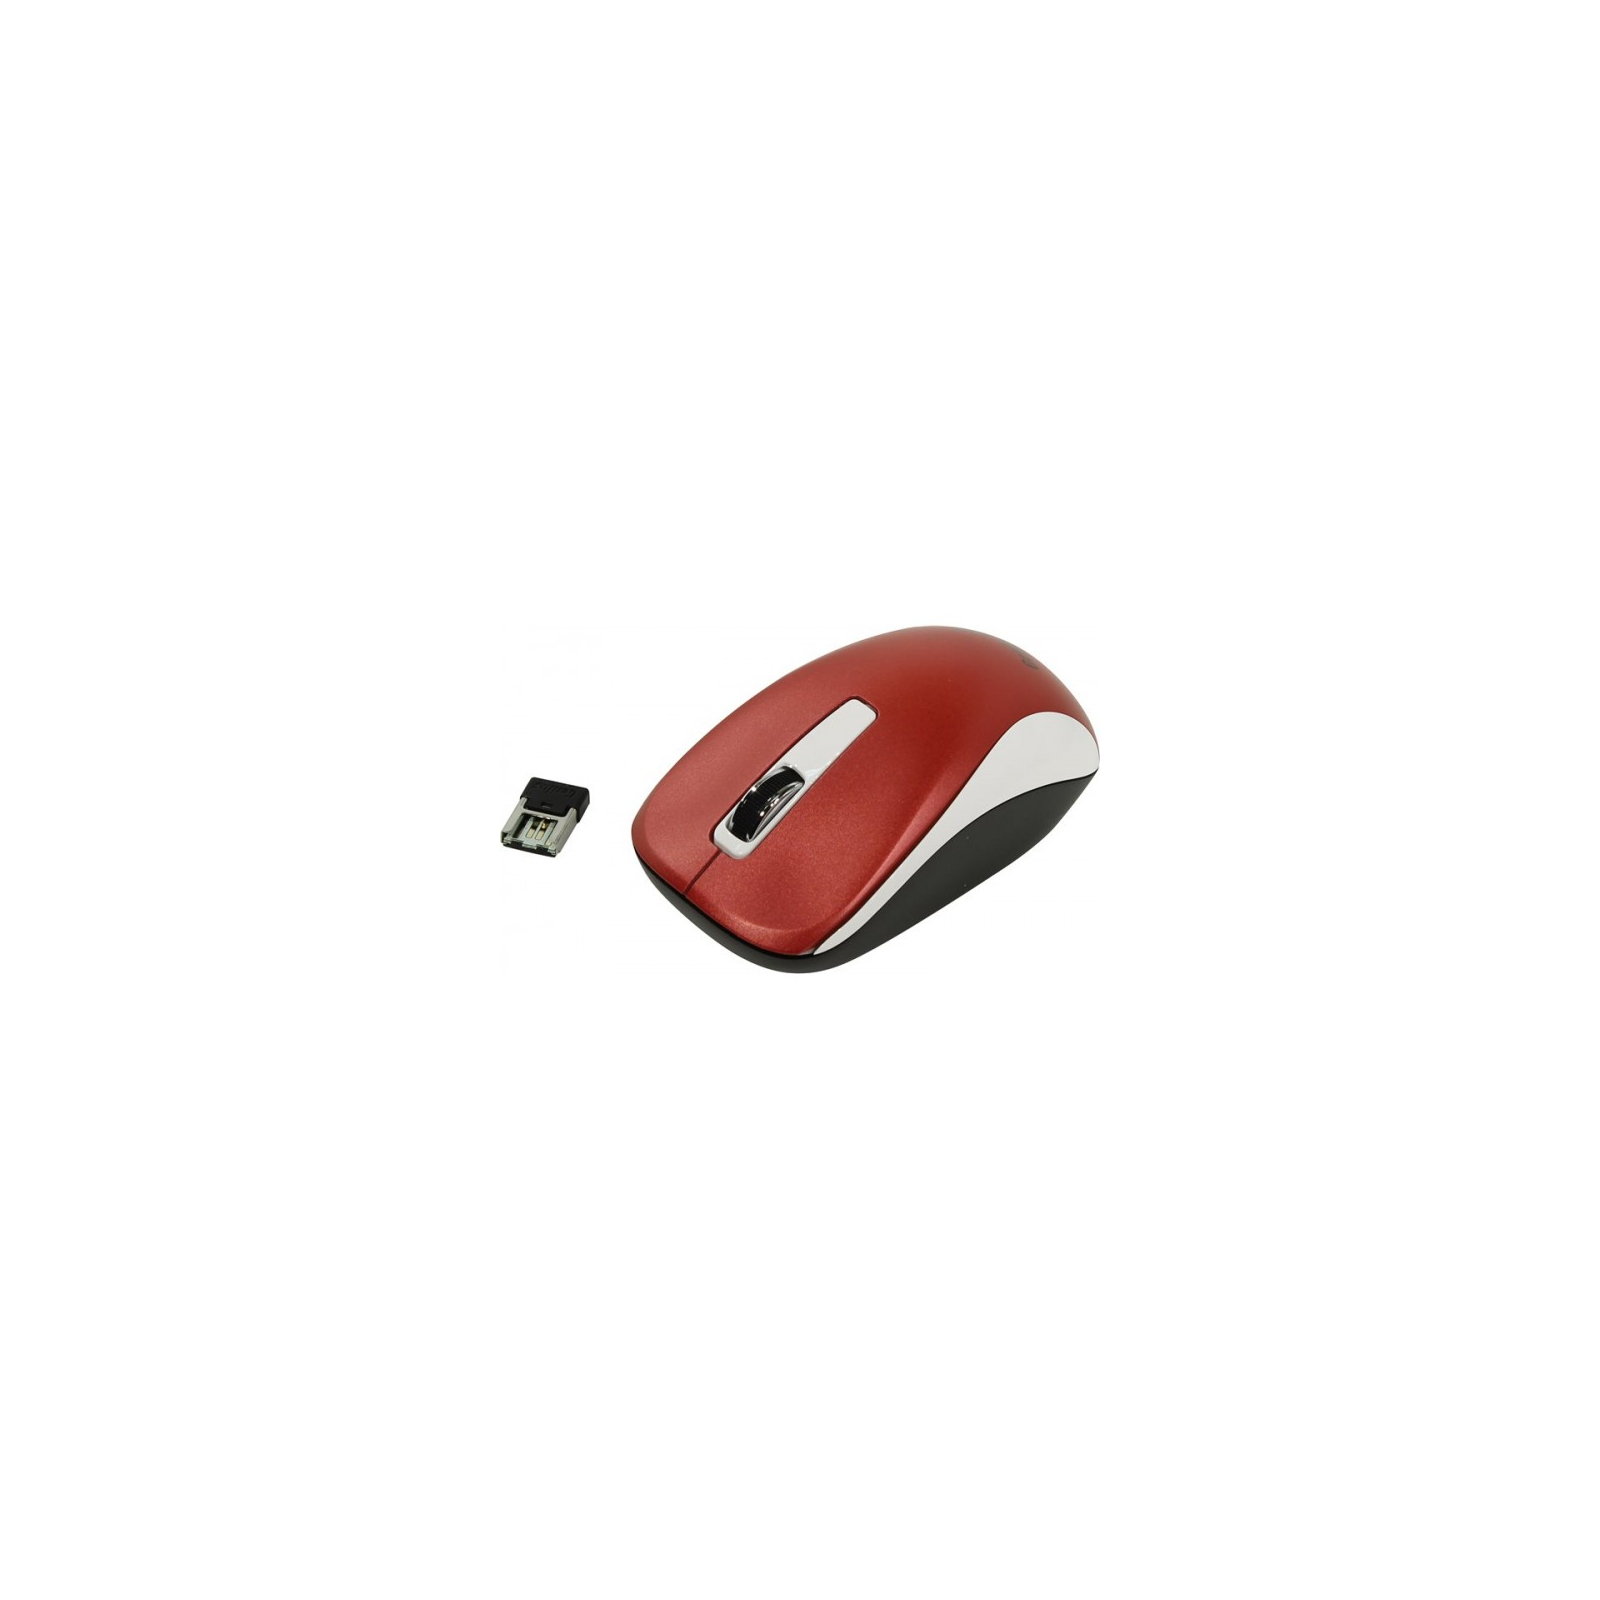 Мишка Genius NX-7010 Red (31030014401)